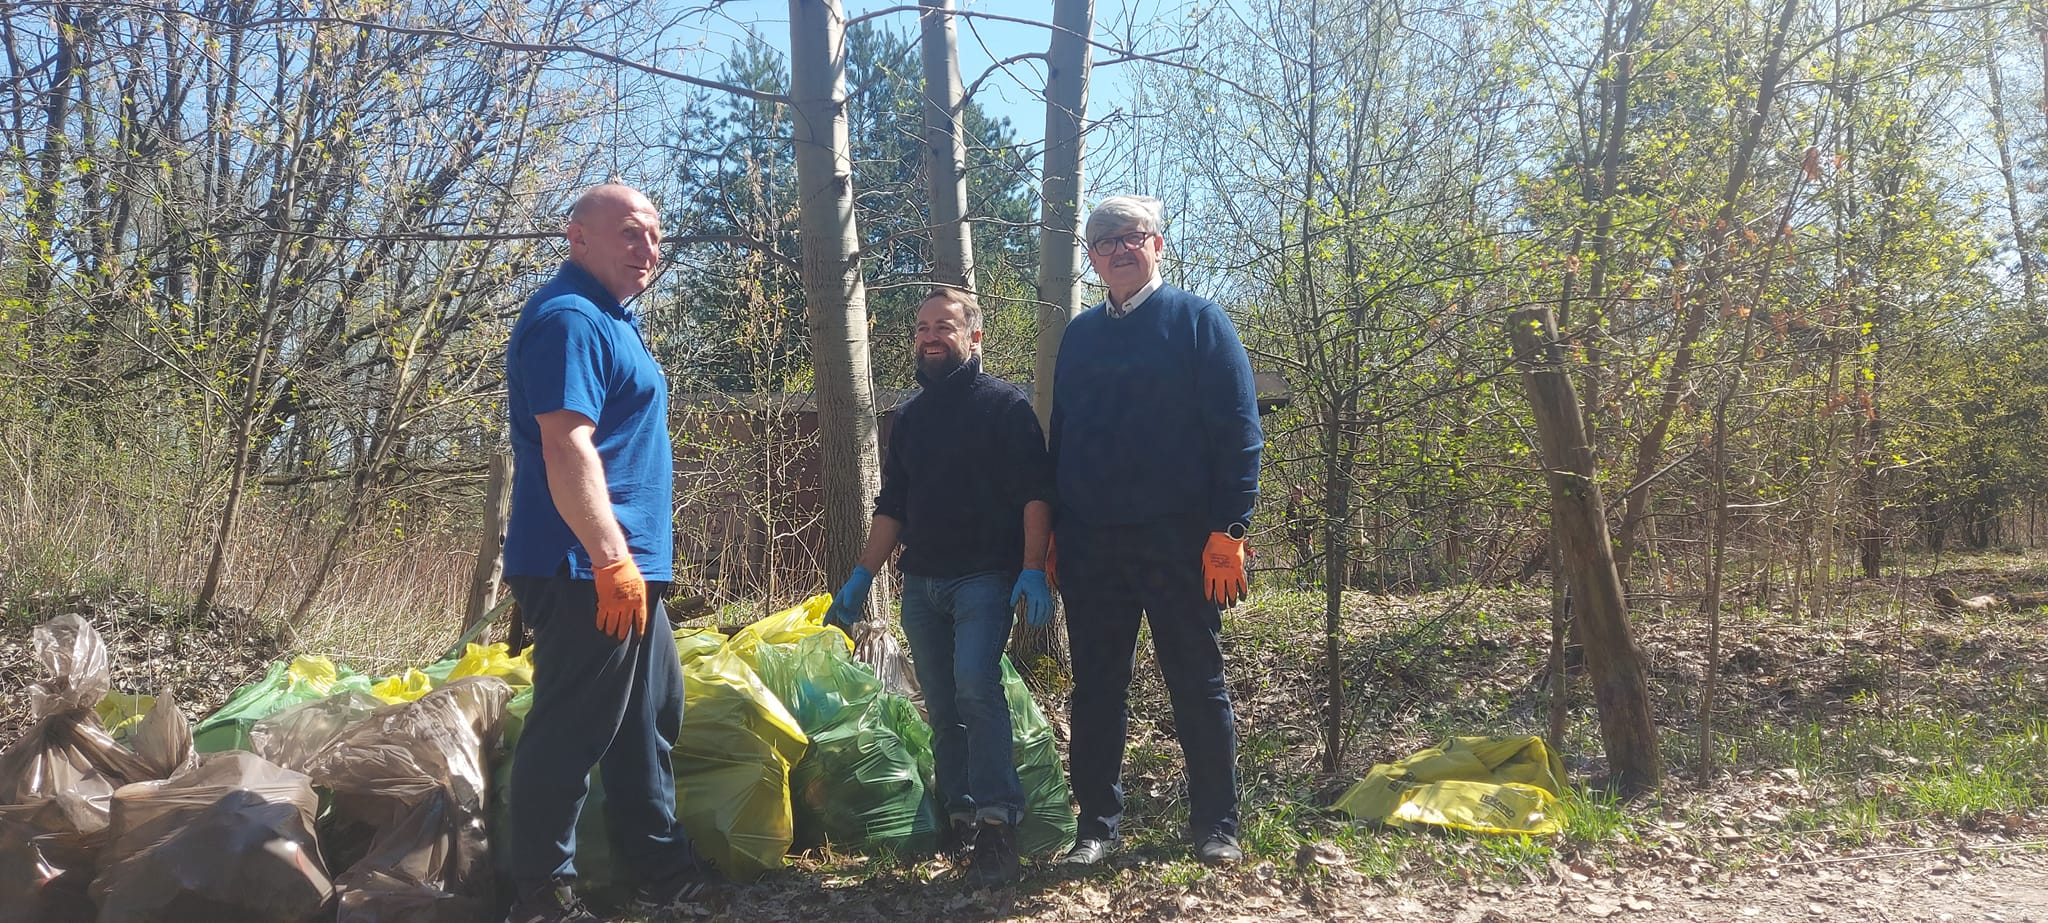 Coroczna akcja „Czyste sołectwo – moja wizytówka”. Trzech mężczyzn stoi w lesie przy workach wypełnionych śmieciami.